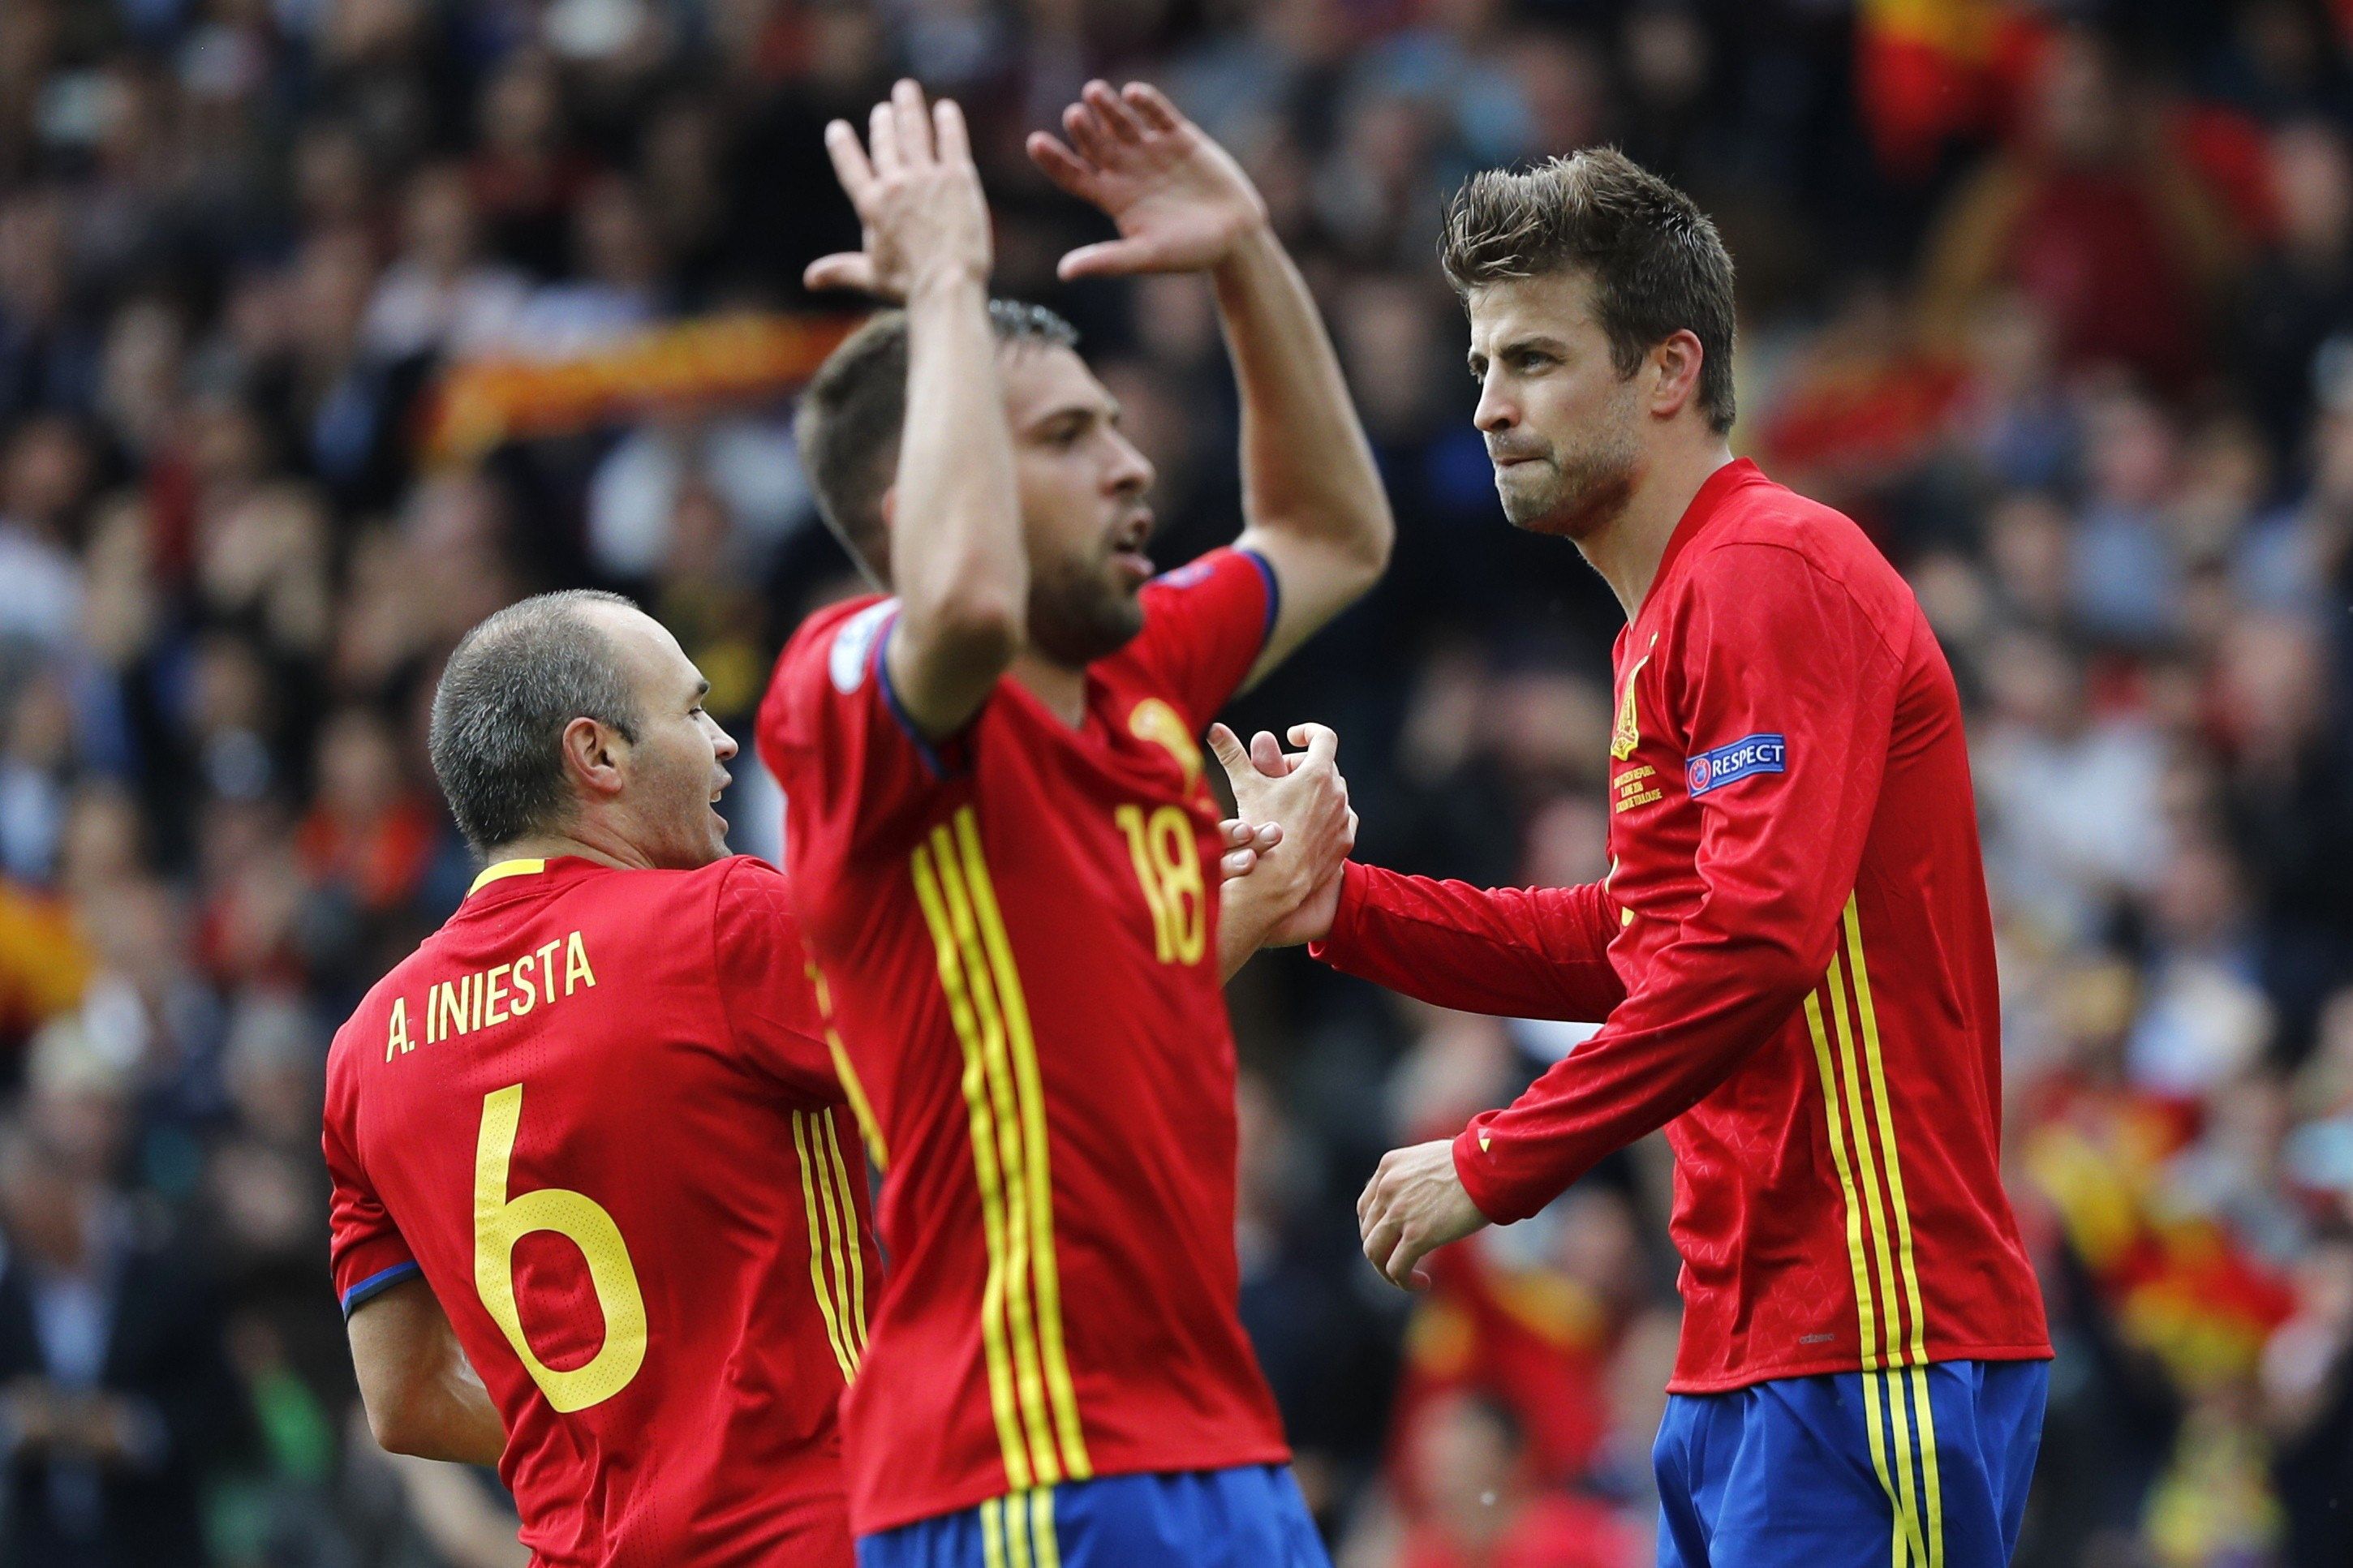 Quatre jugadors del Barça i Deulofeu, convocats amb la selecció espanyola